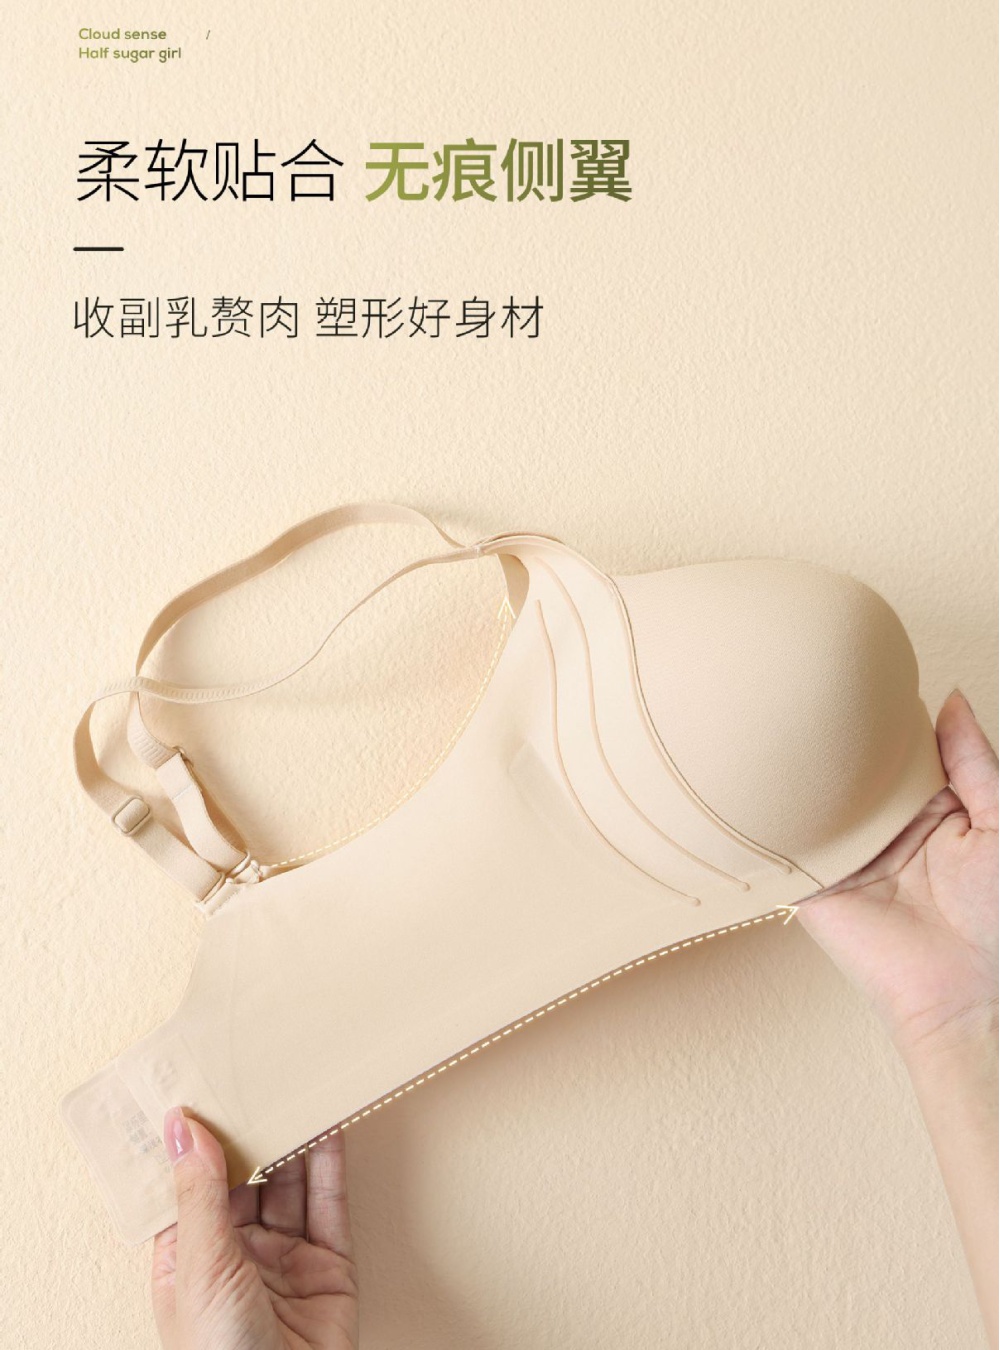 Big adjustable Bra small chest underwear for women